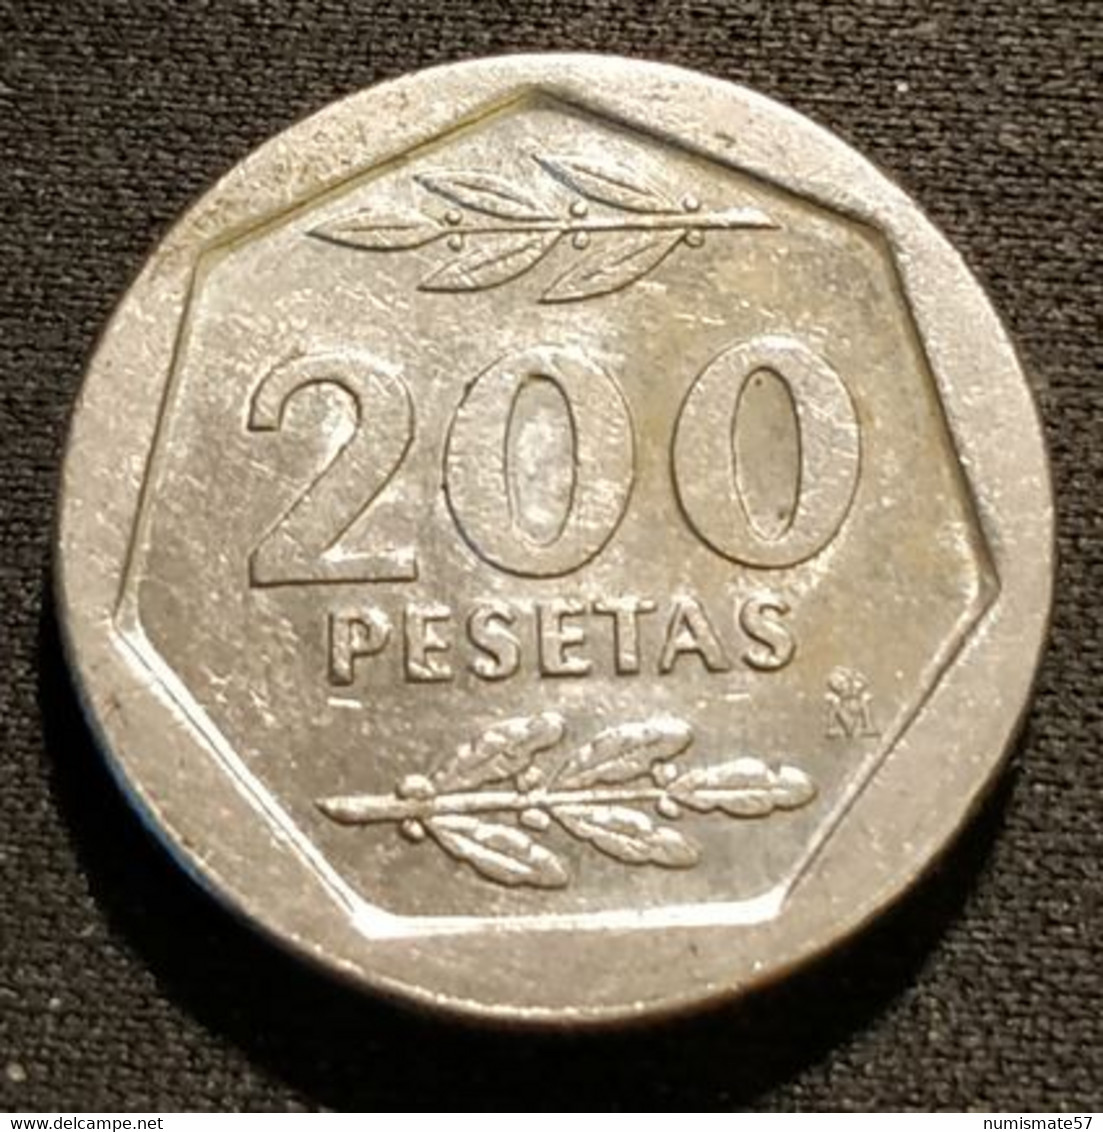 ESPAGNE - ESPANA - SPAIN - 200 PESETAS 1986 - Juan Carlos I - KM 829 - 200 Pesetas